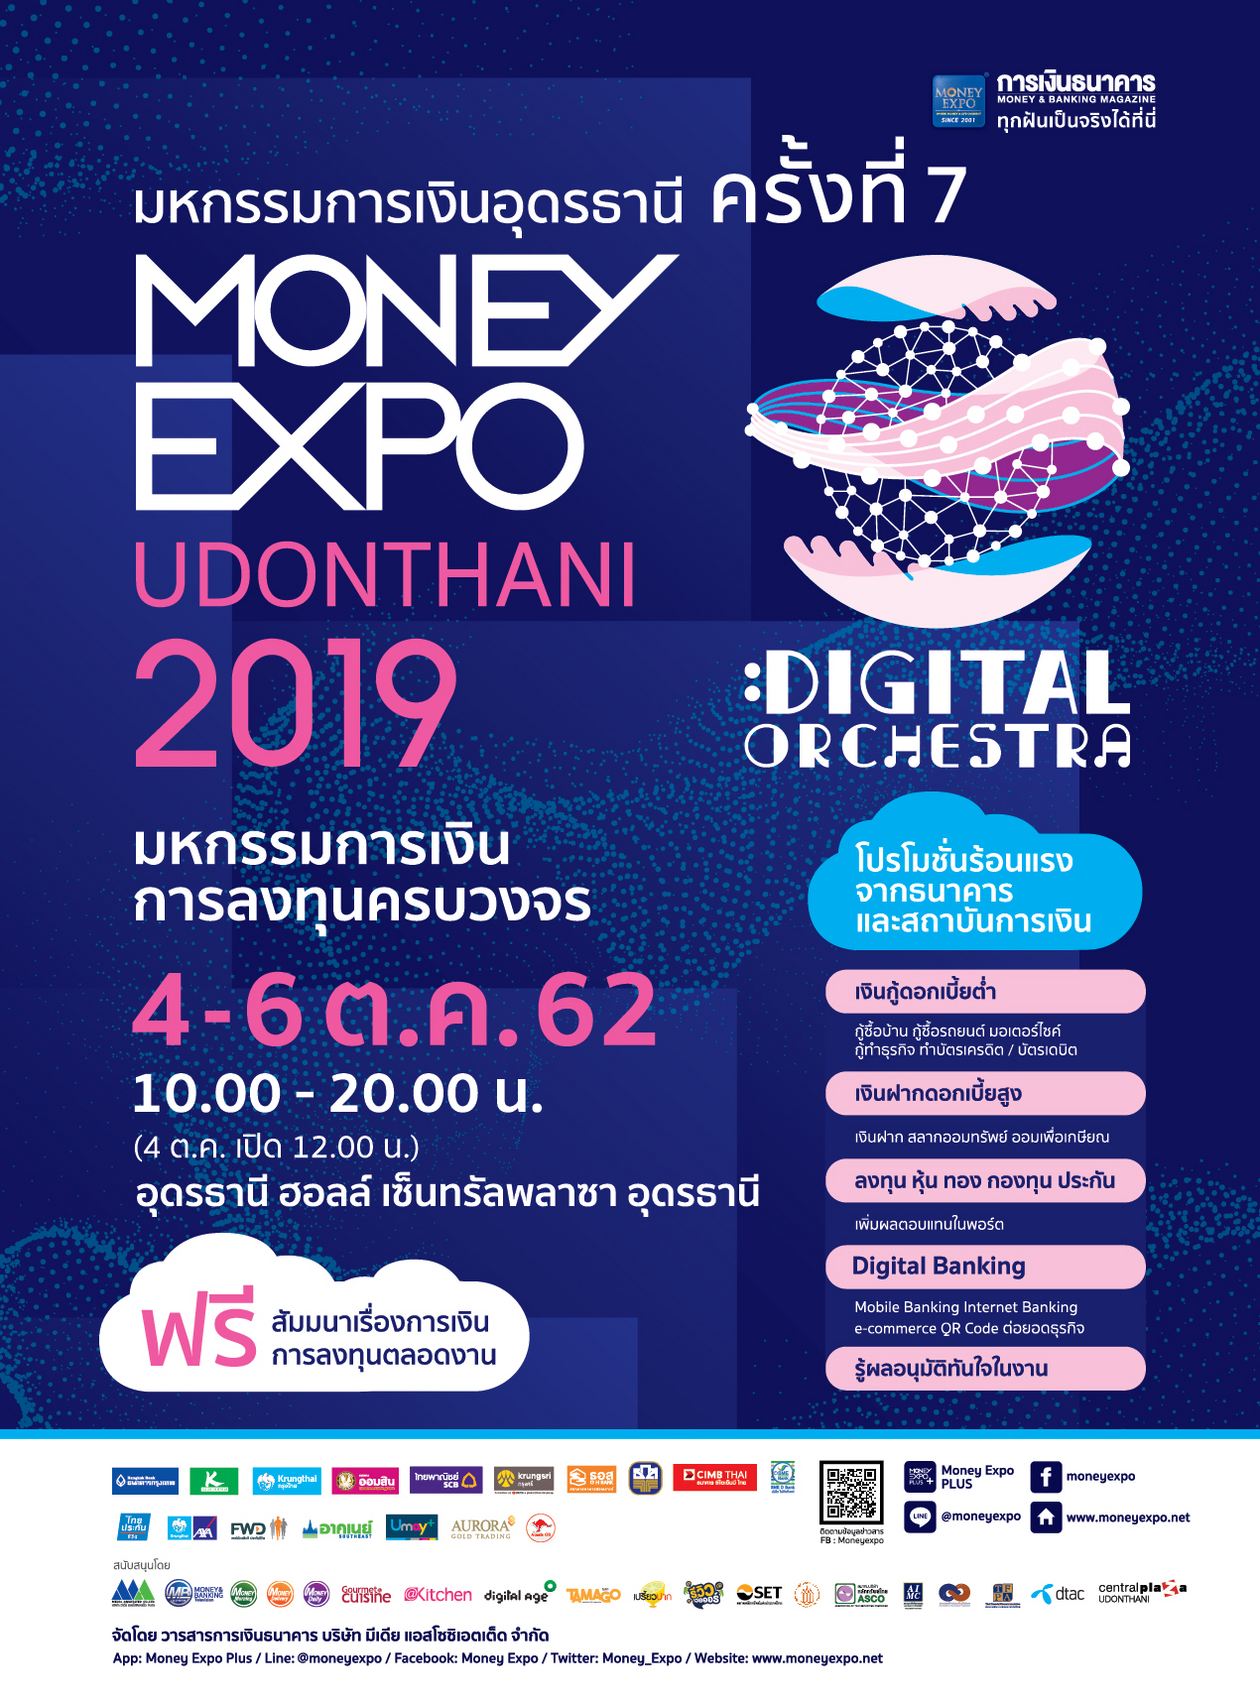 Money Expo Udonthani 2019